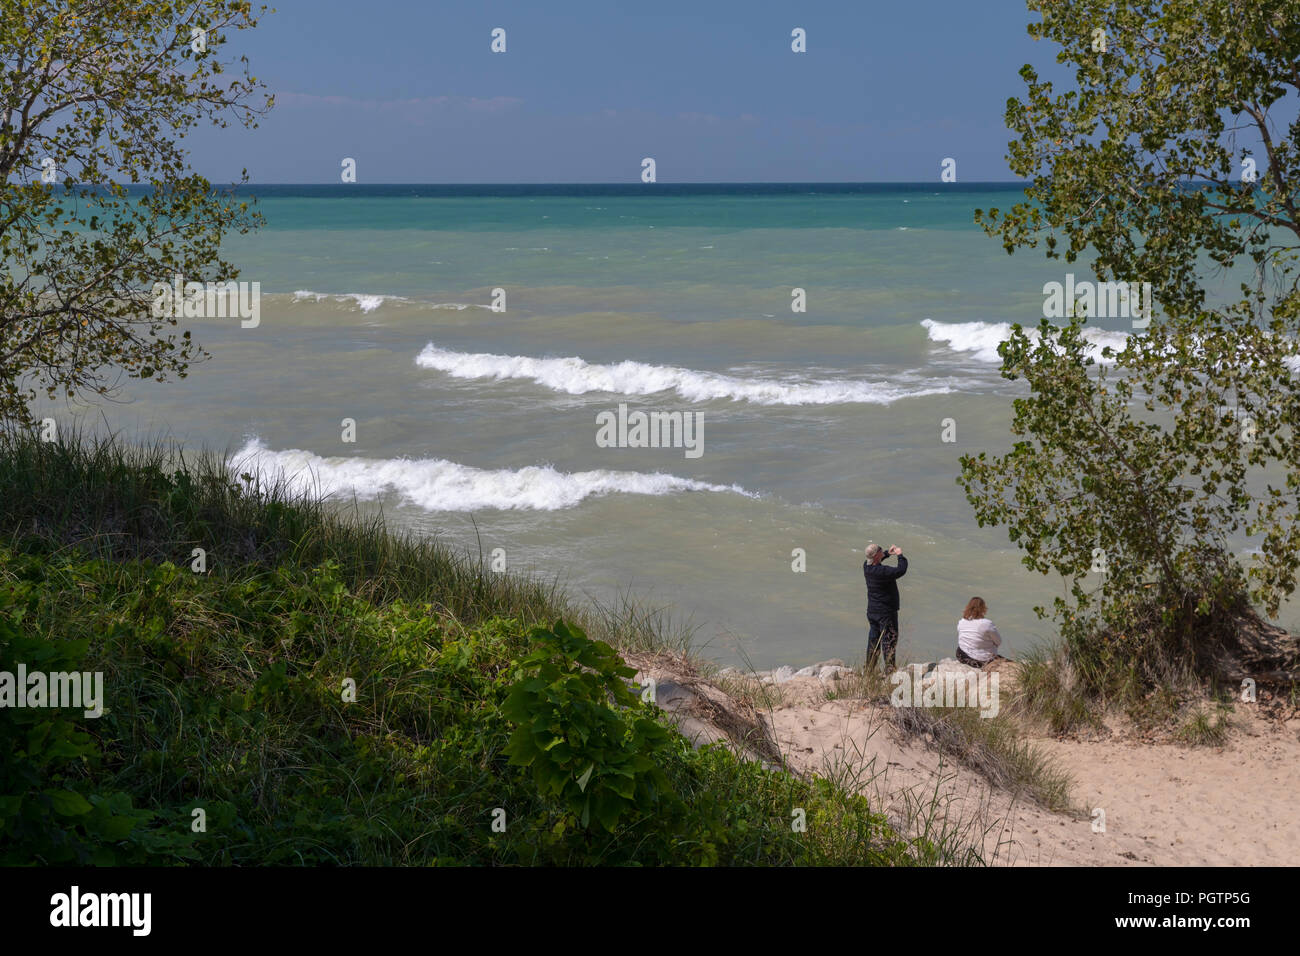 Beverly rive, Indiana - un uomo e una donna sulla spiaggia di Indiana Dunes National Lakeshore, all'estremità meridionale del lago Michigan. Foto Stock